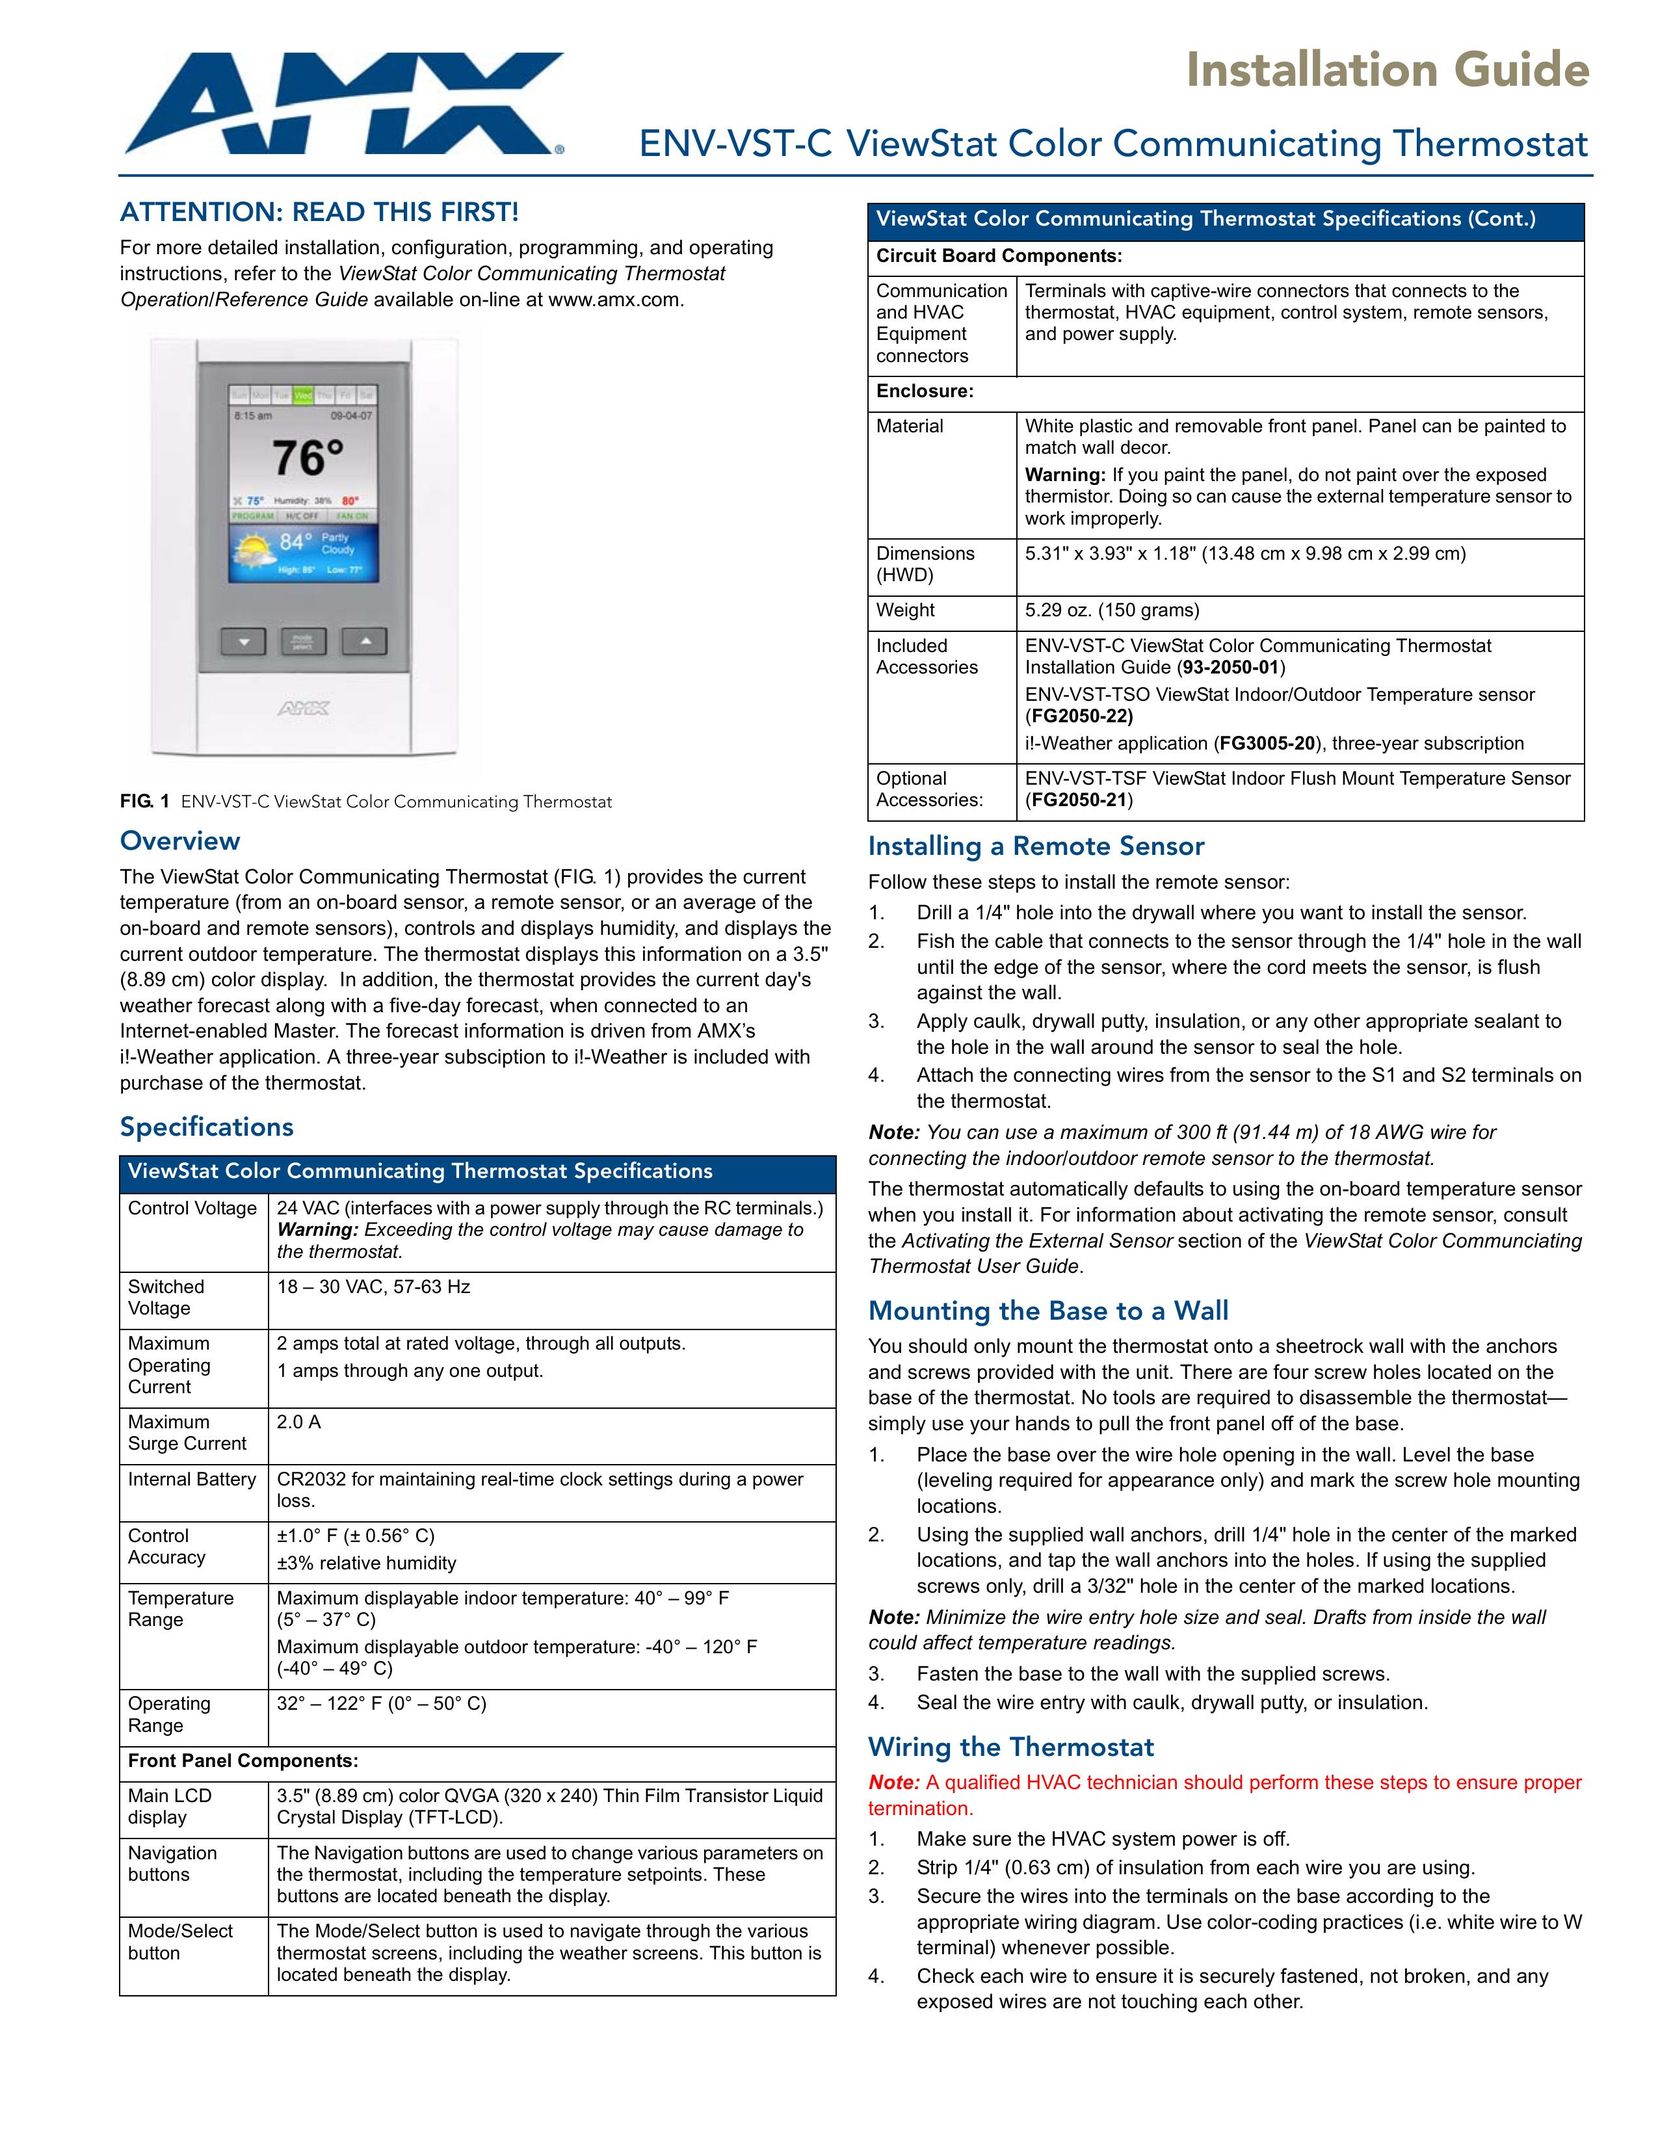 AMX ENV-VST-C Thermostat User Manual